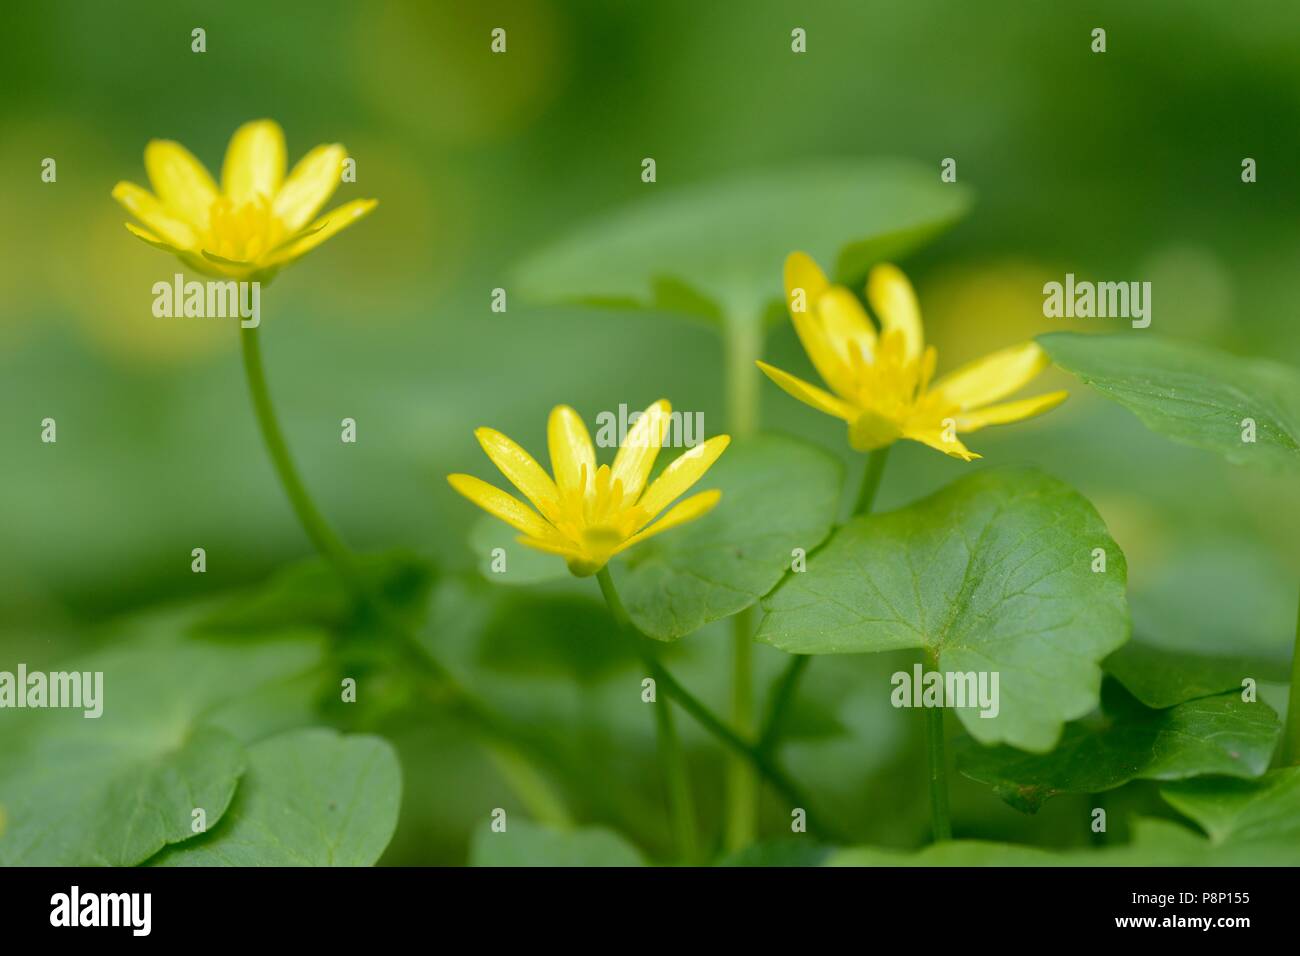 Flowering Lesser celandine Stock Photo